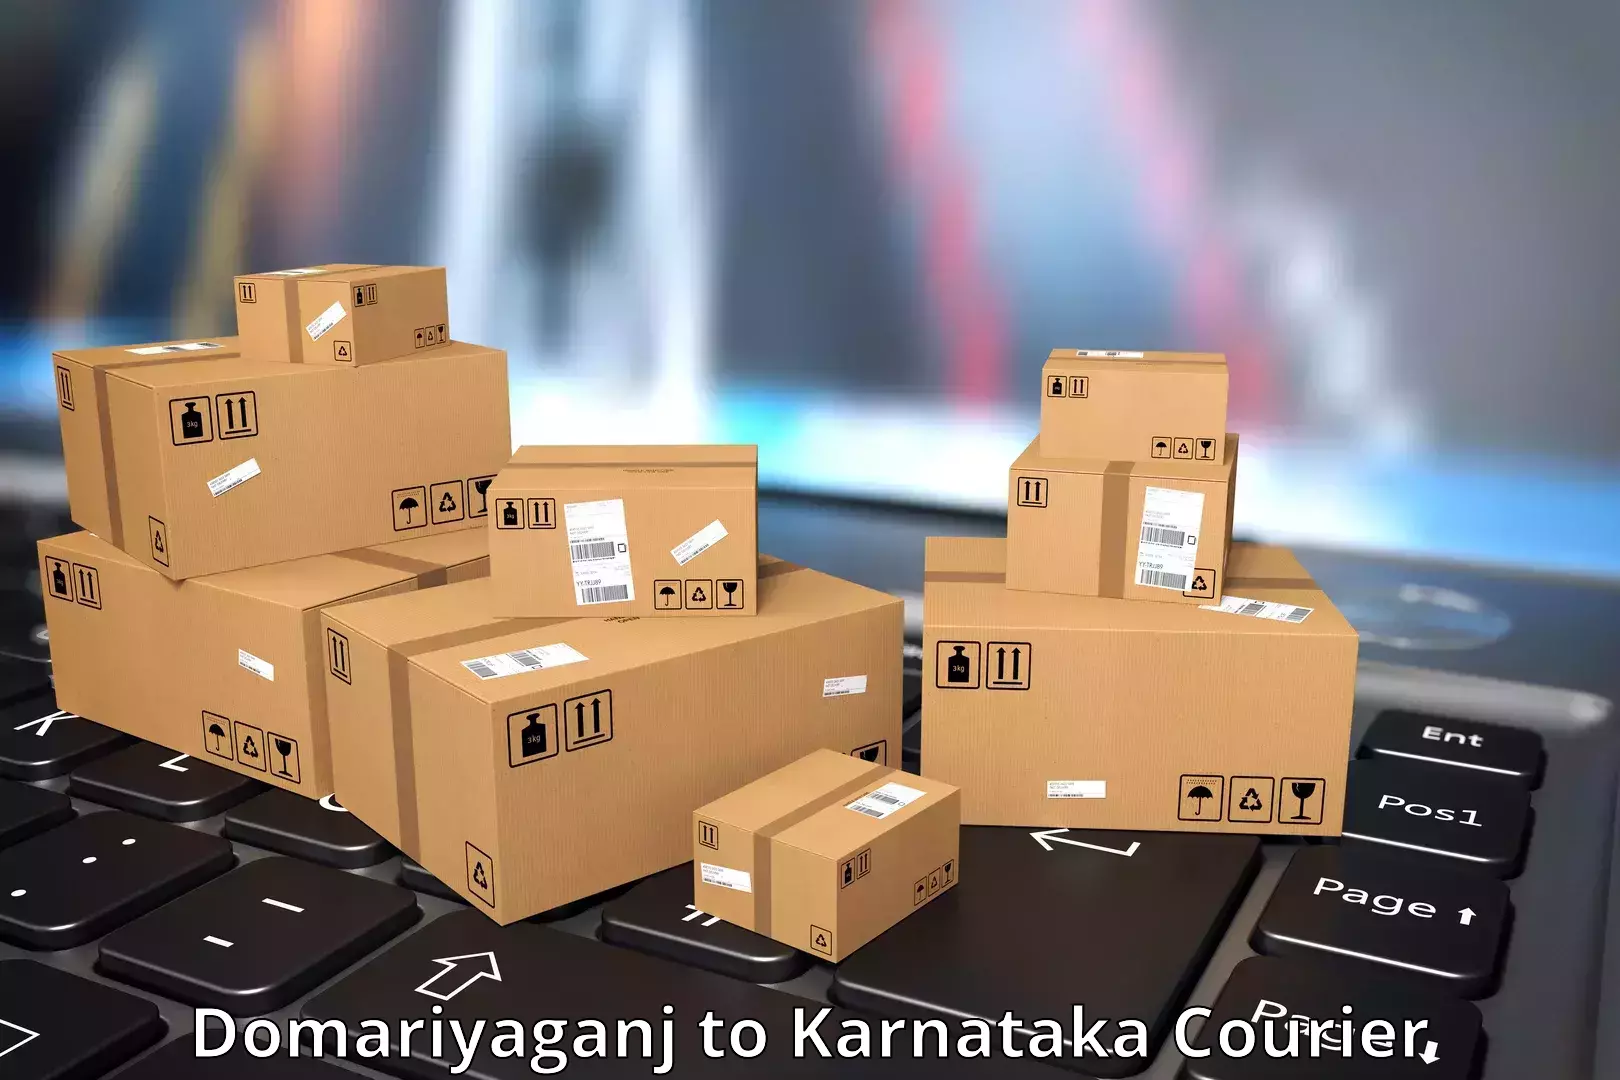 Same-day delivery solutions Domariyaganj to Karnataka